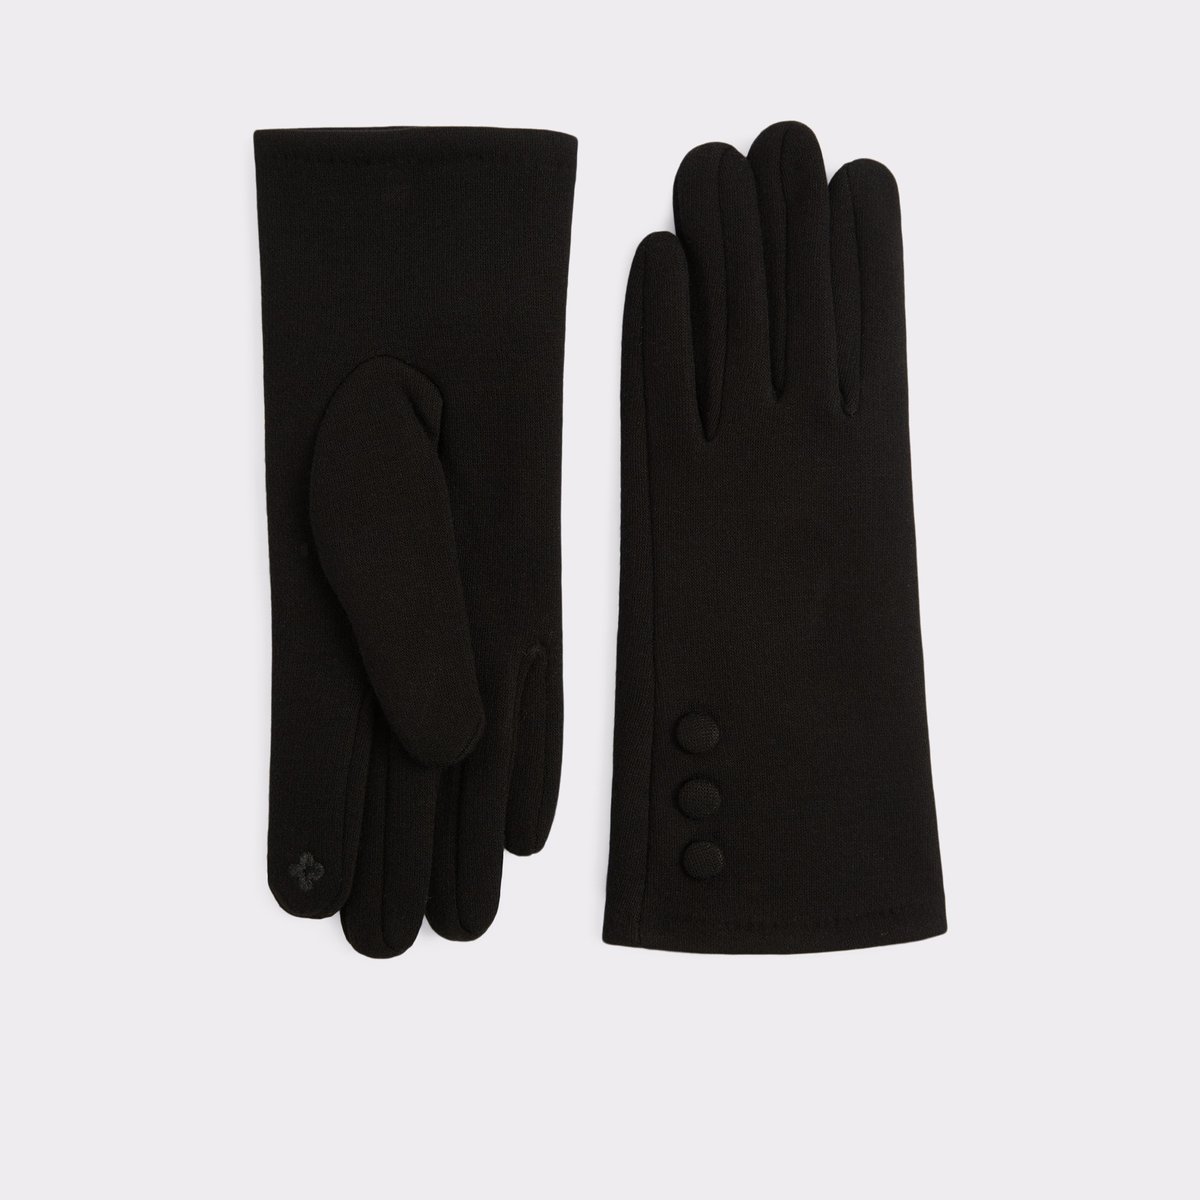 Berelia Black Women's Gloves | ALDO Canada